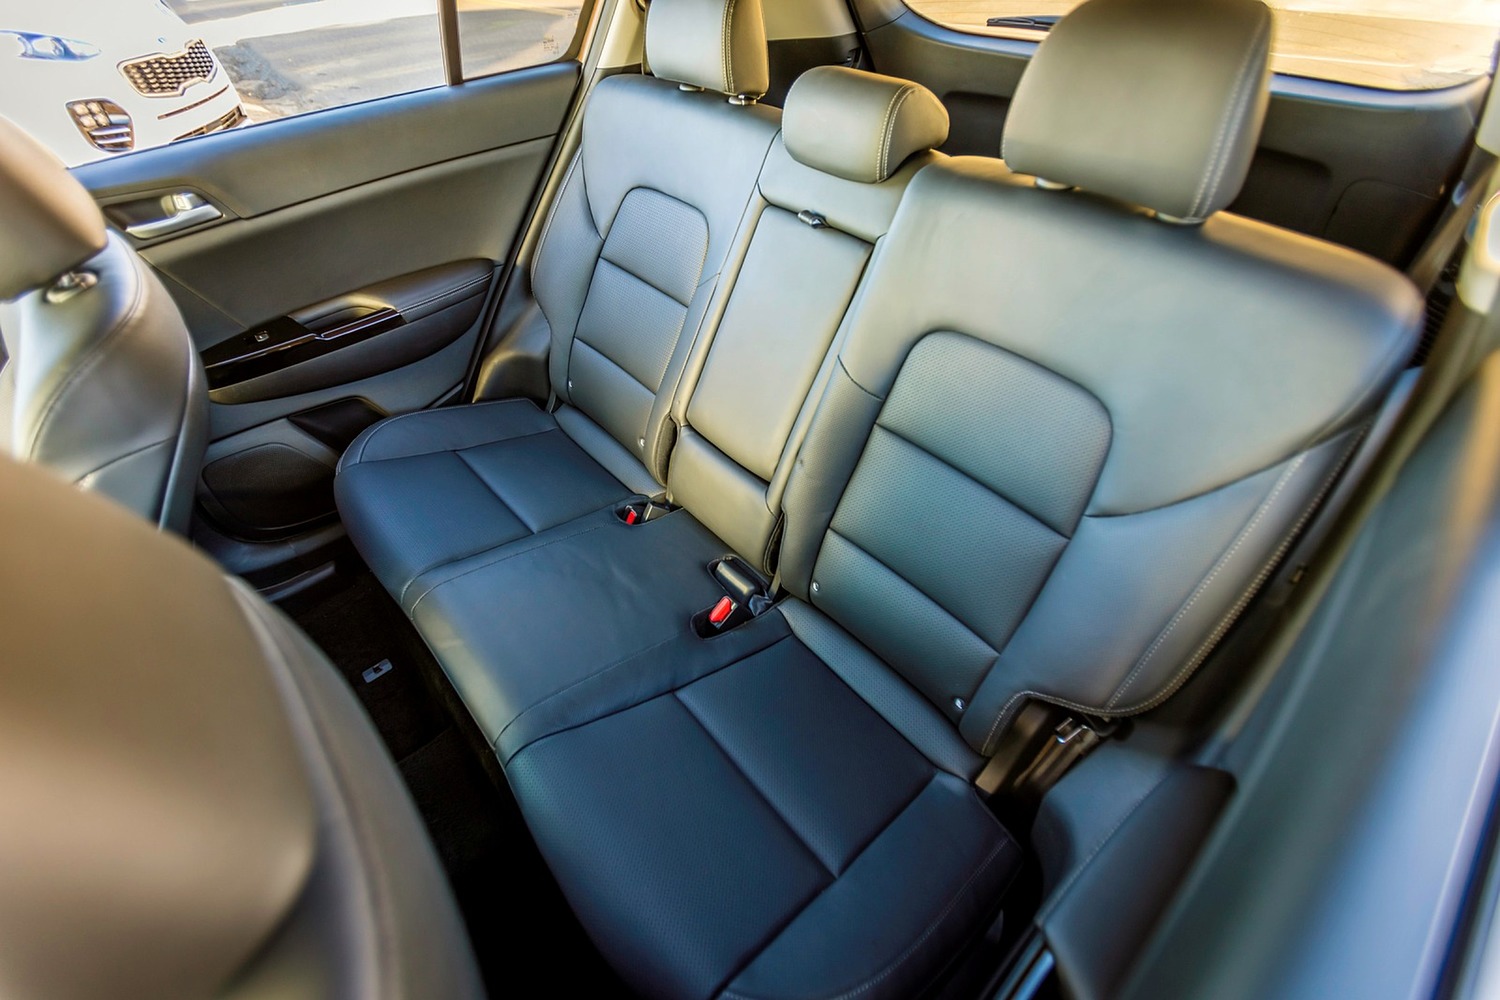 2017 Kia Sportage SX 4dr SUV Rear Interior Shown